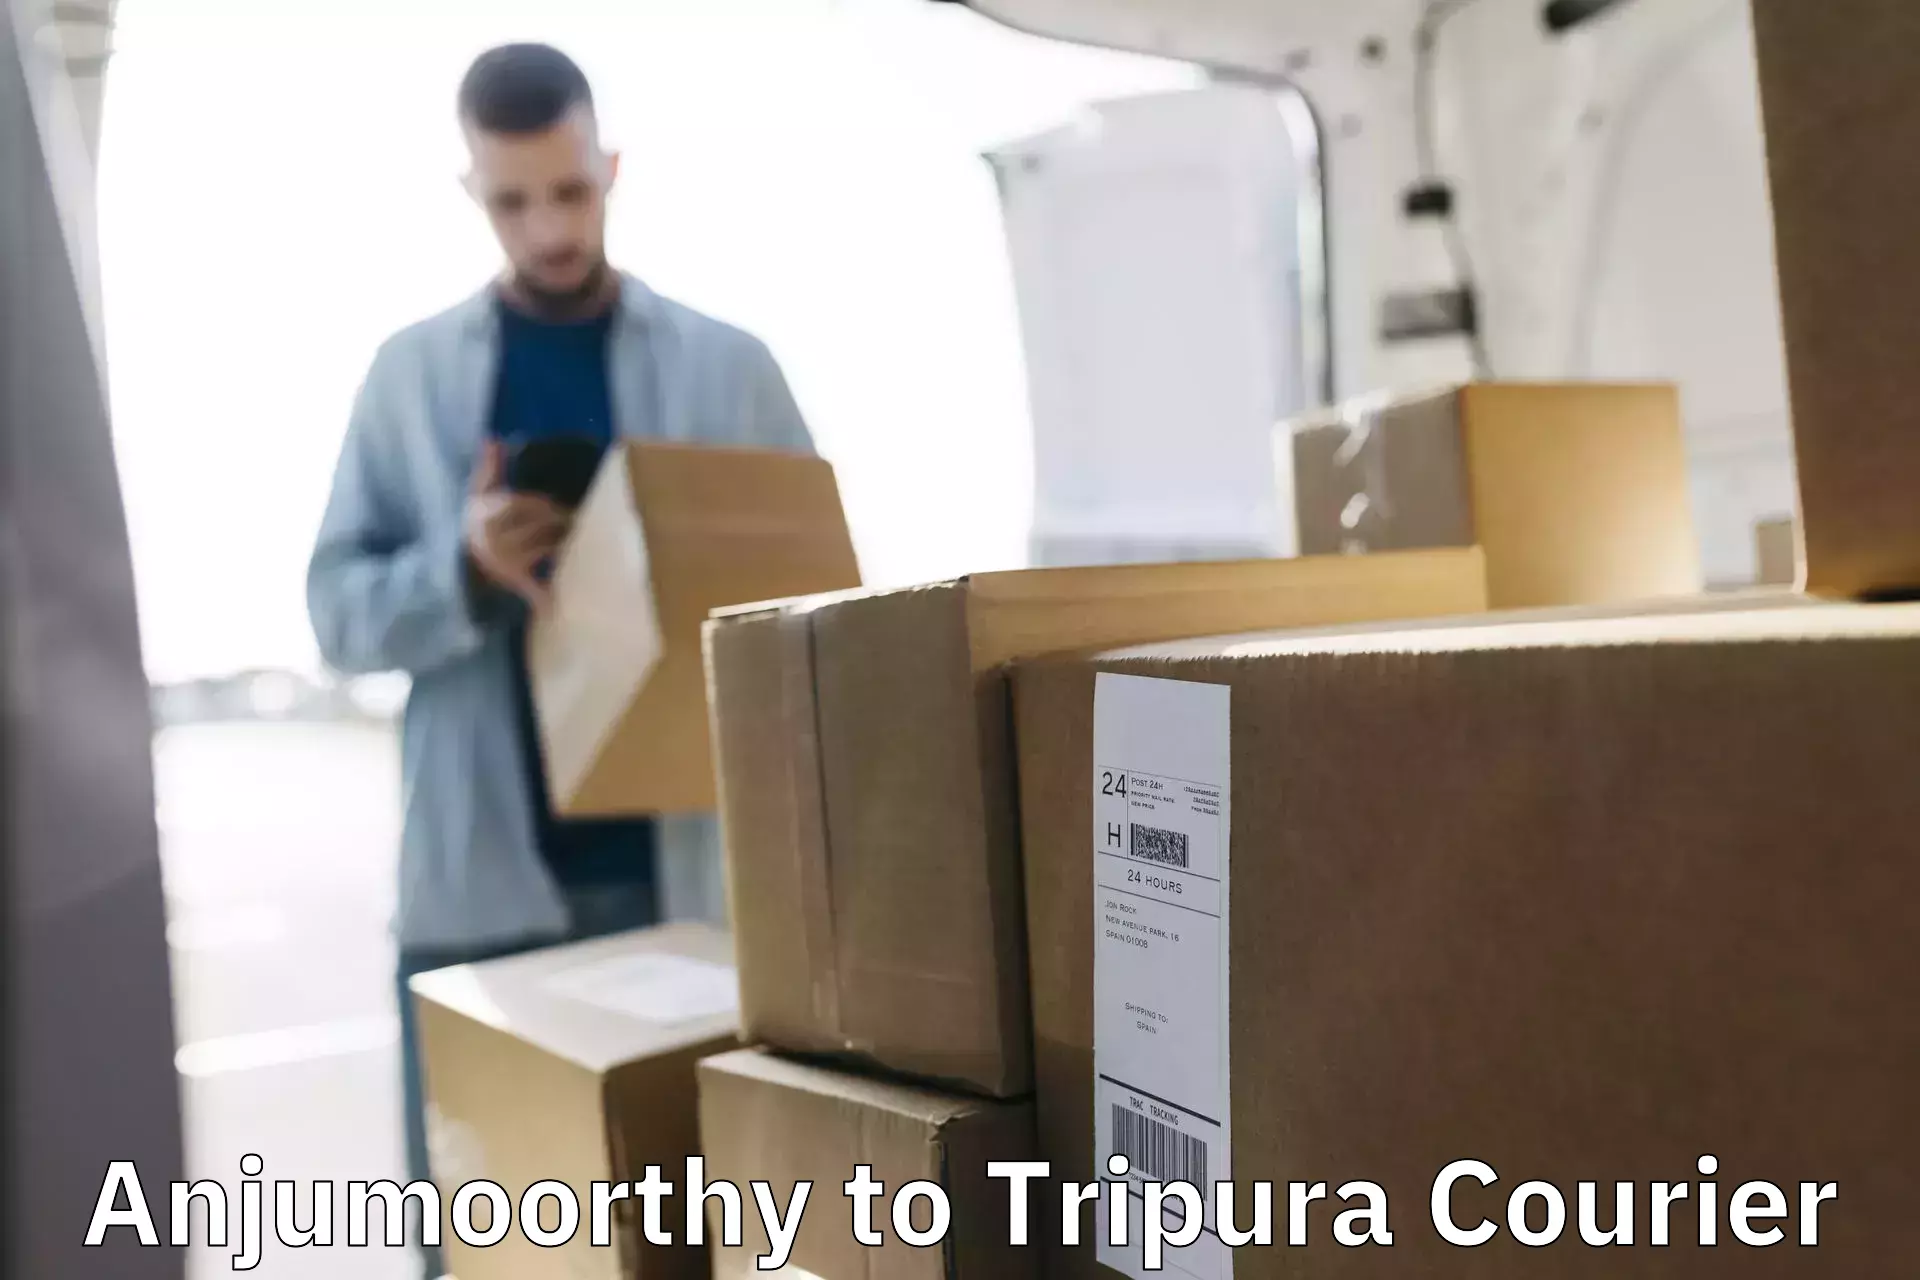 Custom courier packaging Anjumoorthy to Udaipur Tripura